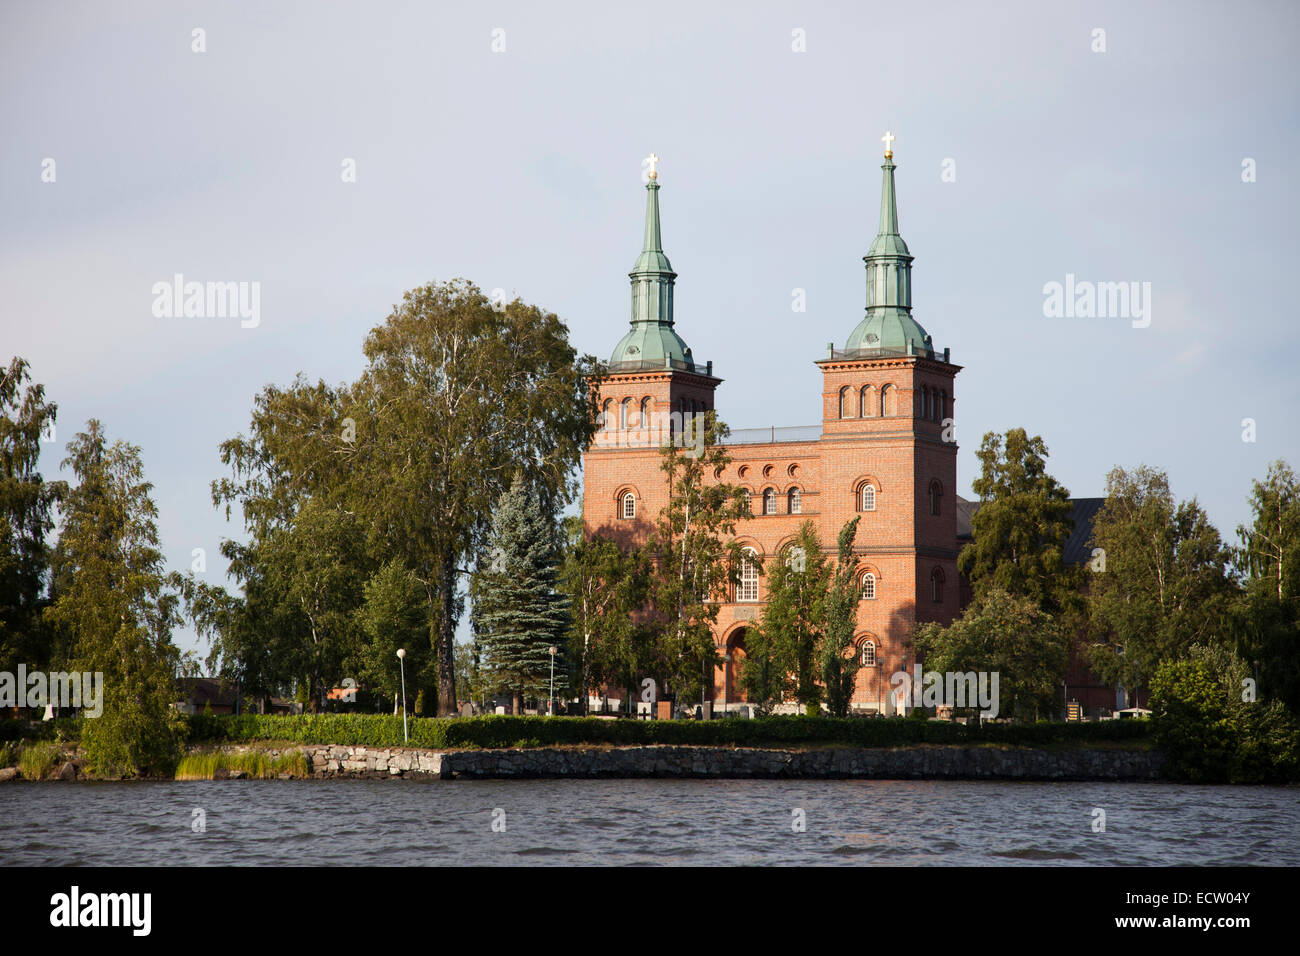 tyrvaan church, tyrvaan kirkko, rautavesi lake, vammala village, finland, europe Stock Photo